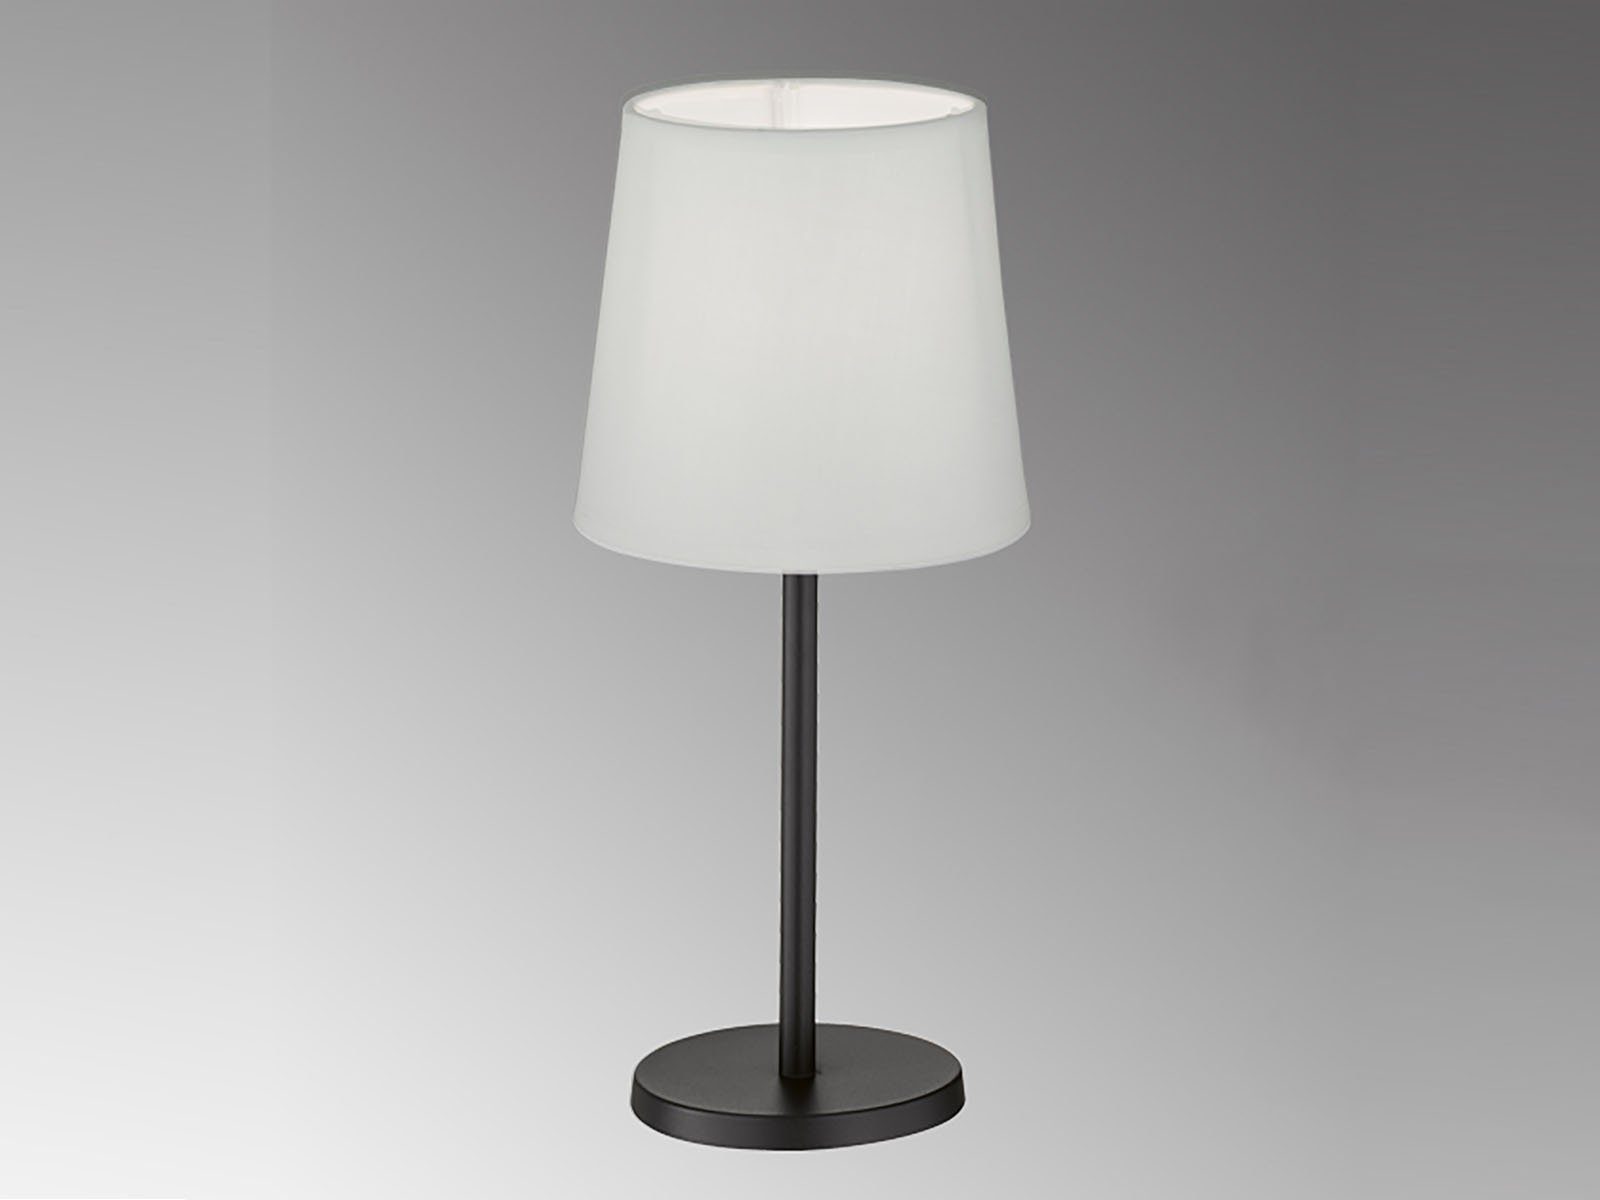 FHL easy! LED Nachttischlampe, LED wechselbar, Warmweiß, kleine Design-klassiker Schwarz mit Stoff Lampenschirm Weiß, Höhe 30cm Schwarz-Weiß